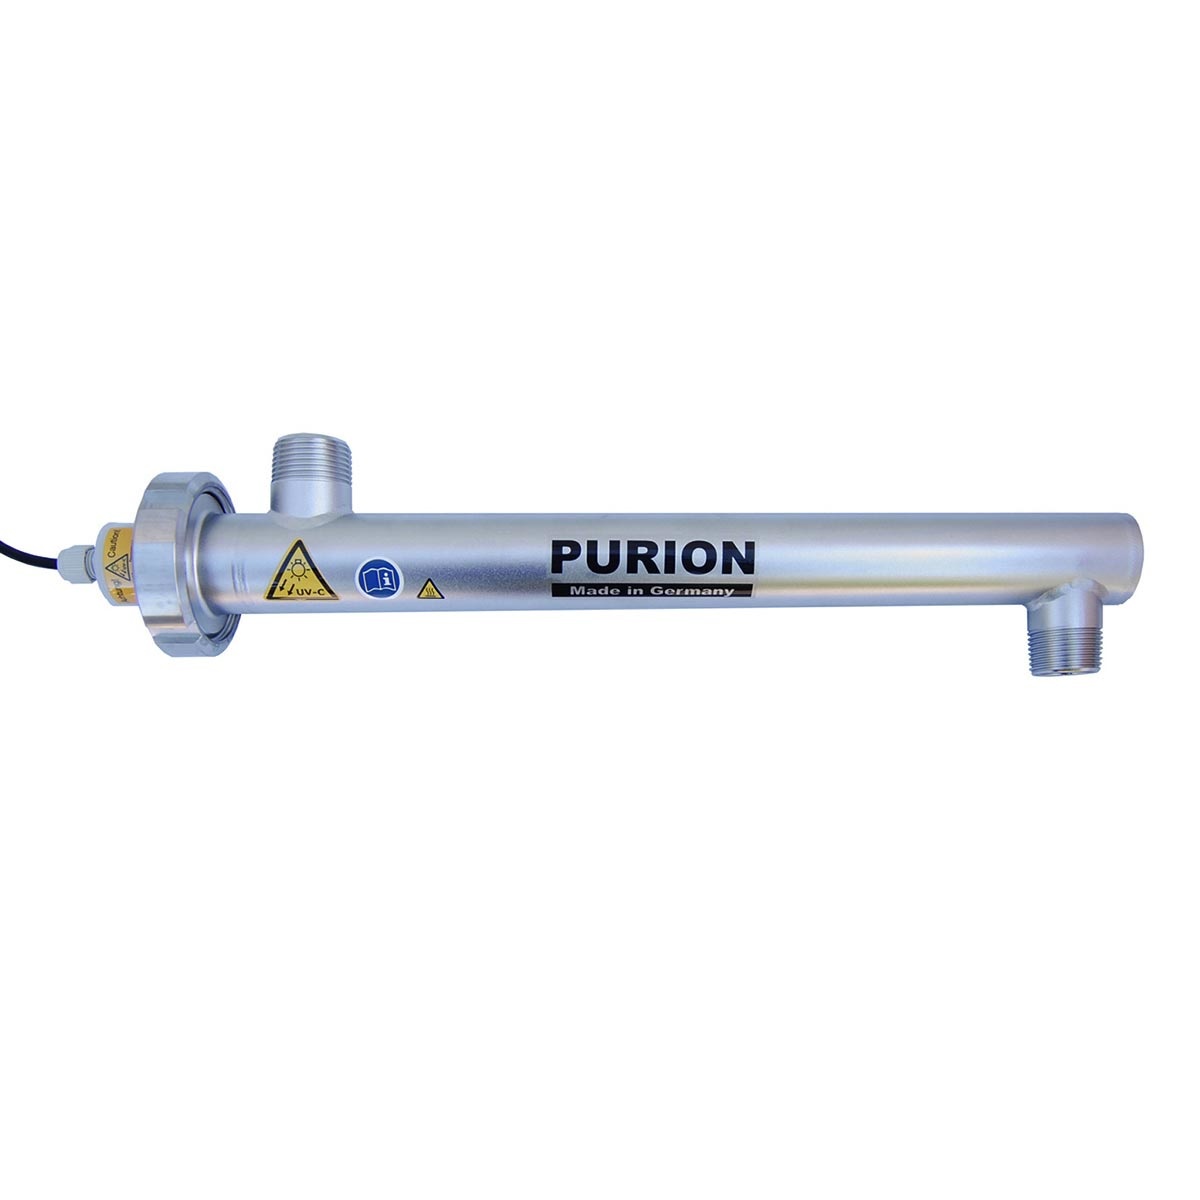 UV-Filteranlage Purion 1000 - 230 V / 110 V